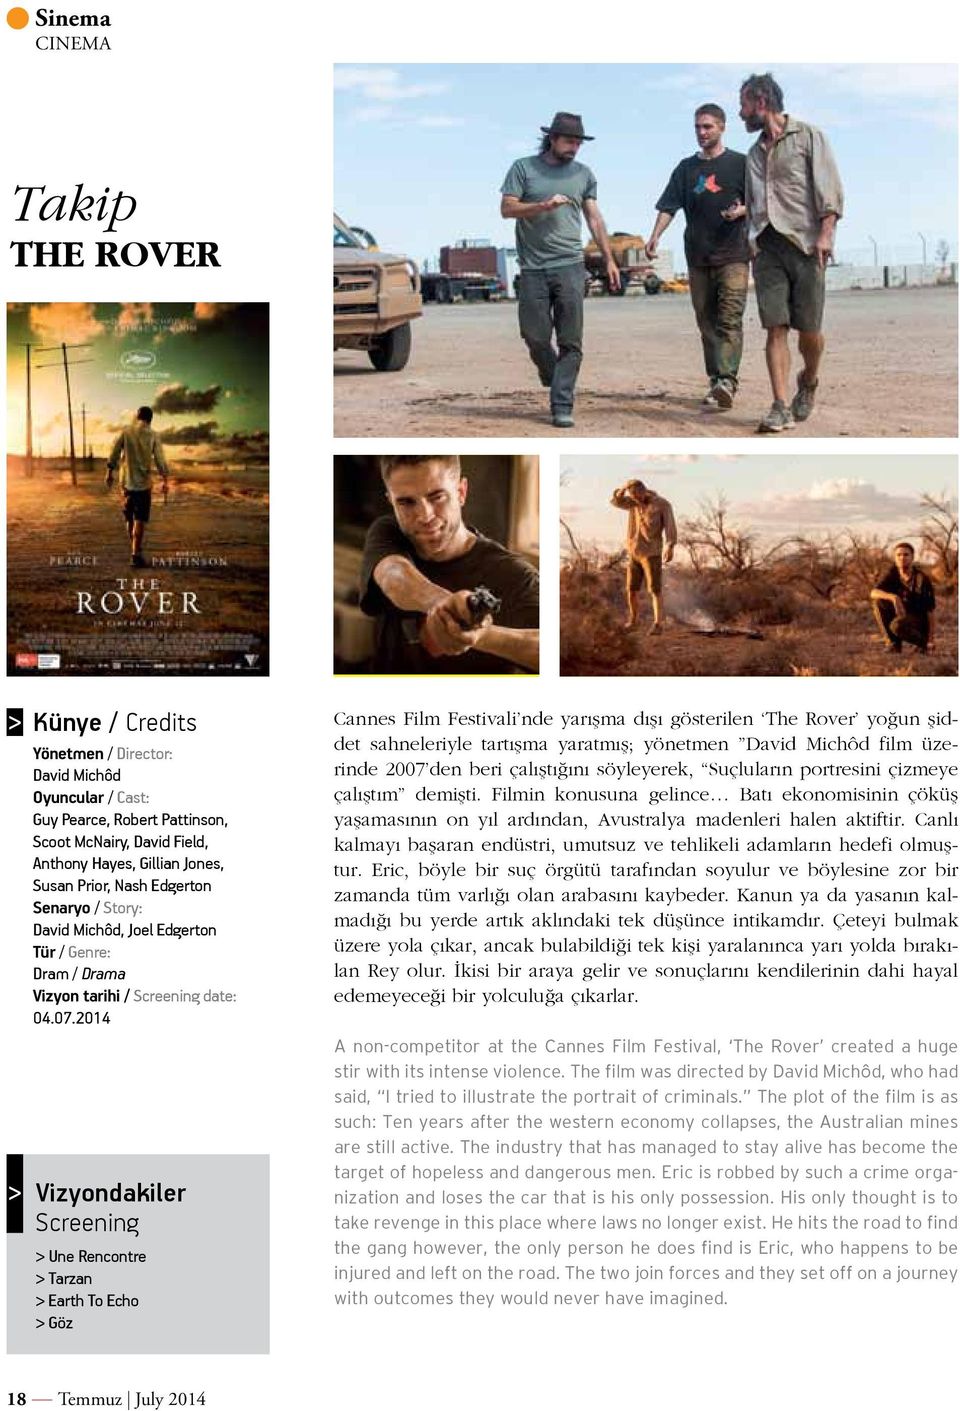 2014 Vizyondakiler Screening > Une Rencontre > Tarzan > Earth To Echo > Göz Cannes Film Festivali nde yarışma dışı gösterilen The Rover yoğun şiddet sahneleriyle tartışma yaratmış; yönetmen David